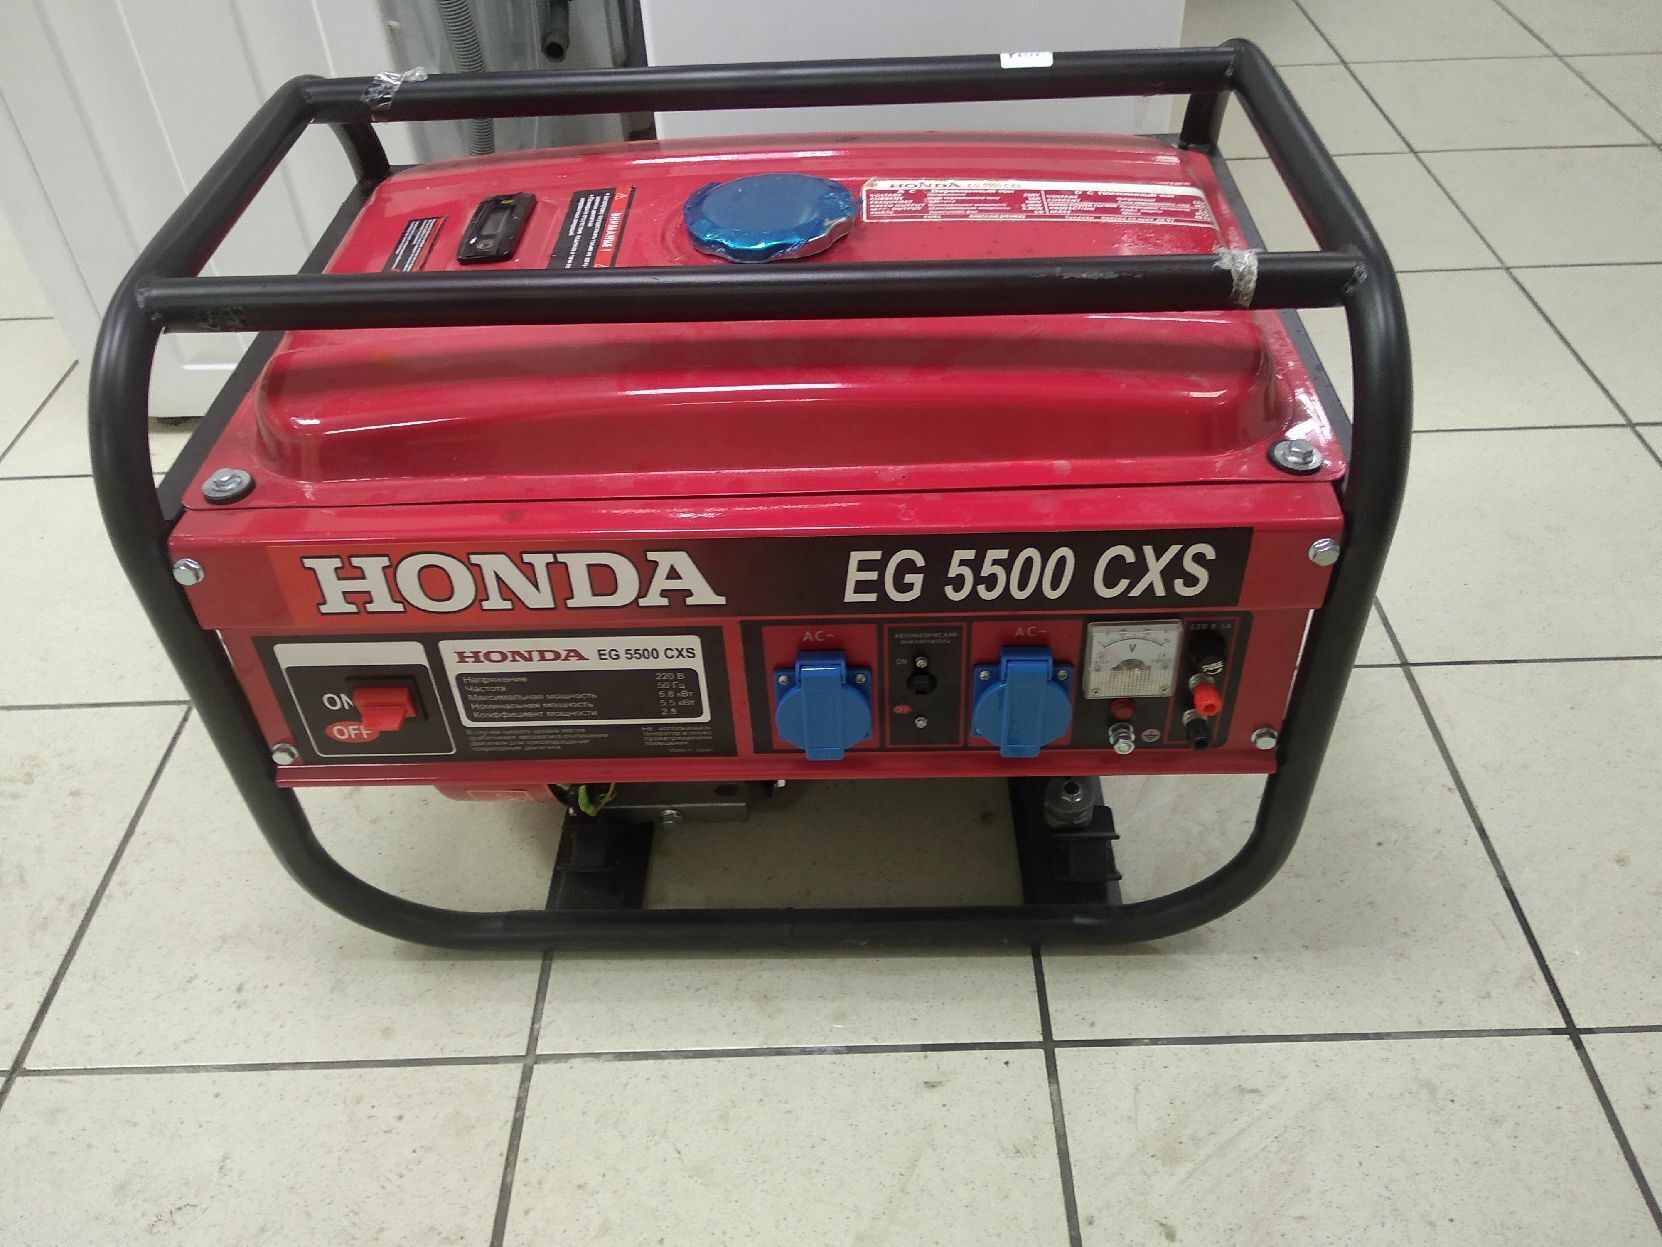 Honda eg5500cxs отзывы. Хонда eg5500cxs. Миниэлектростанция Honda eg5500cxs. Honda EG 5500 CXS. Honda 5500 Генератор eg5500cxs бензиновый.